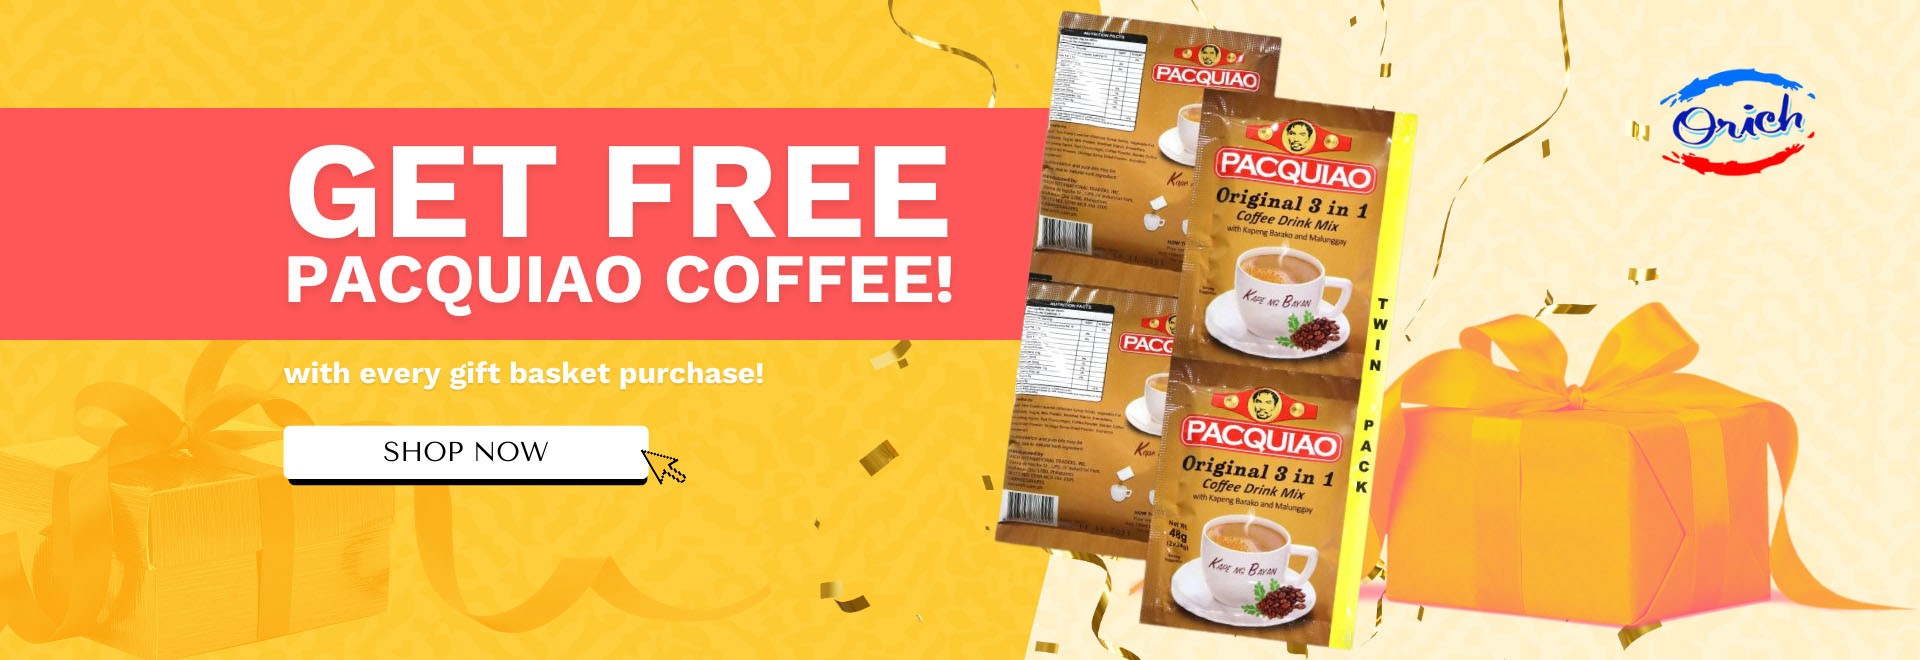 Free Pacquiao Coffee